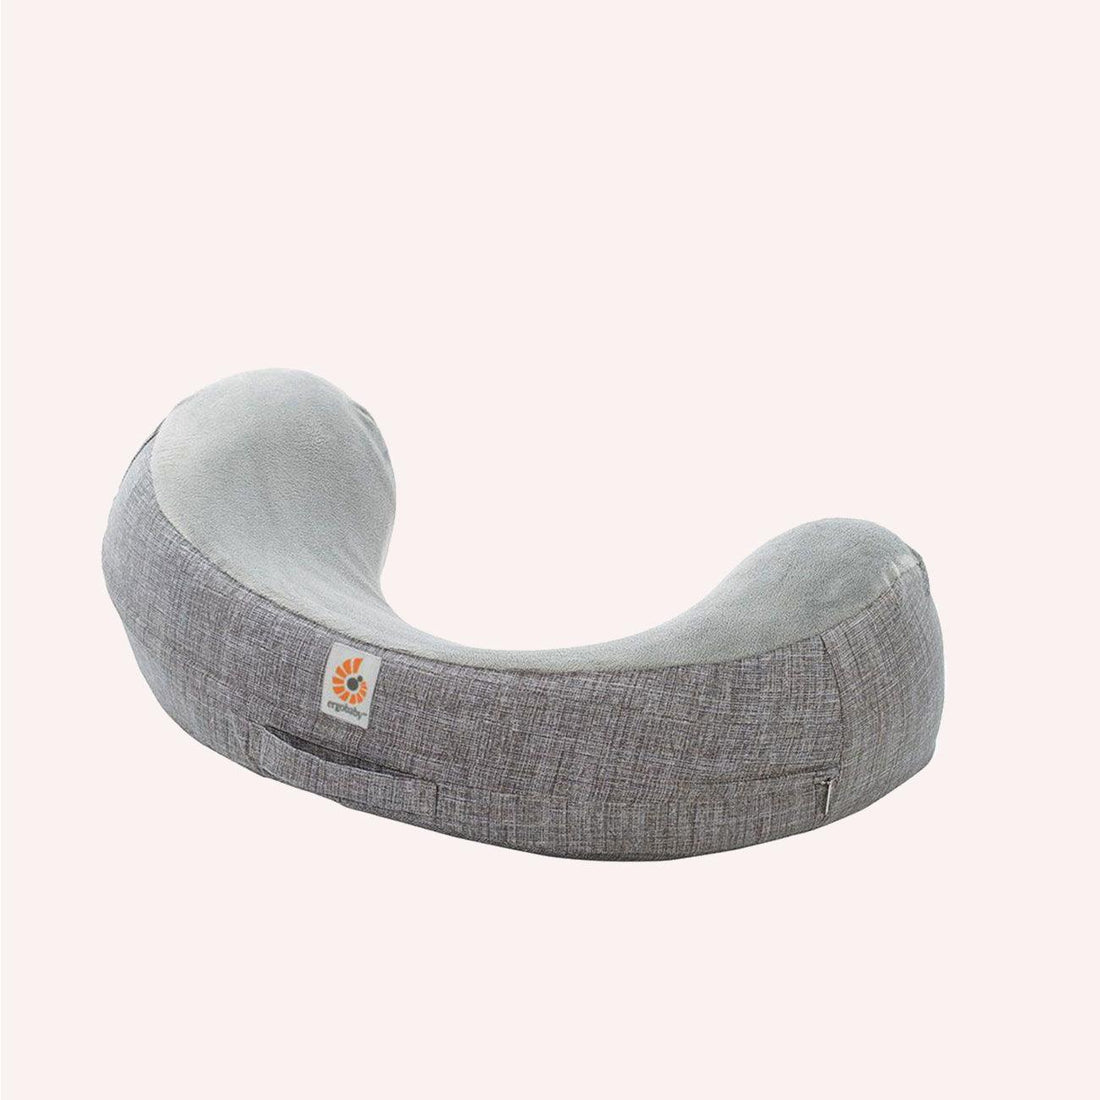 Natural Curve Nursing Pillow - Heathered Grey